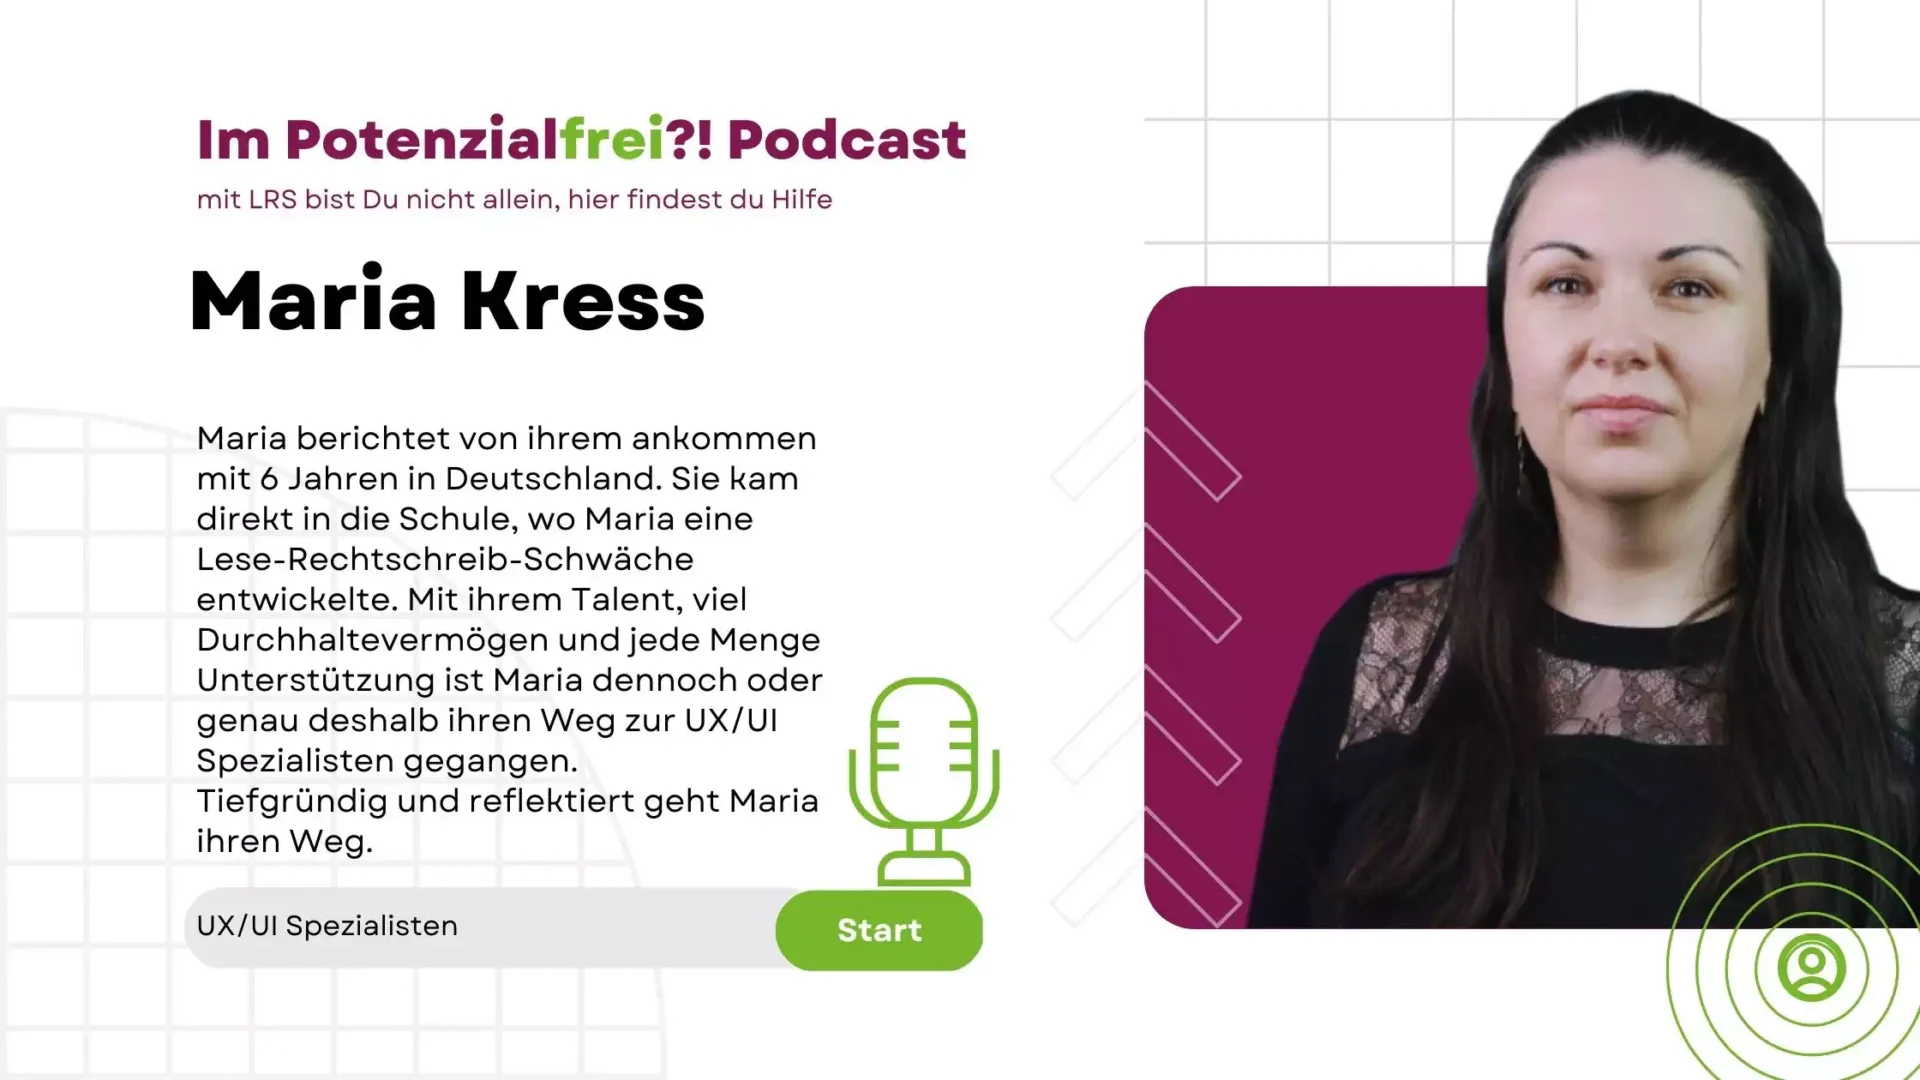 Maria Kress UX-UI Spezialisten im Potenzialfrei Podcast